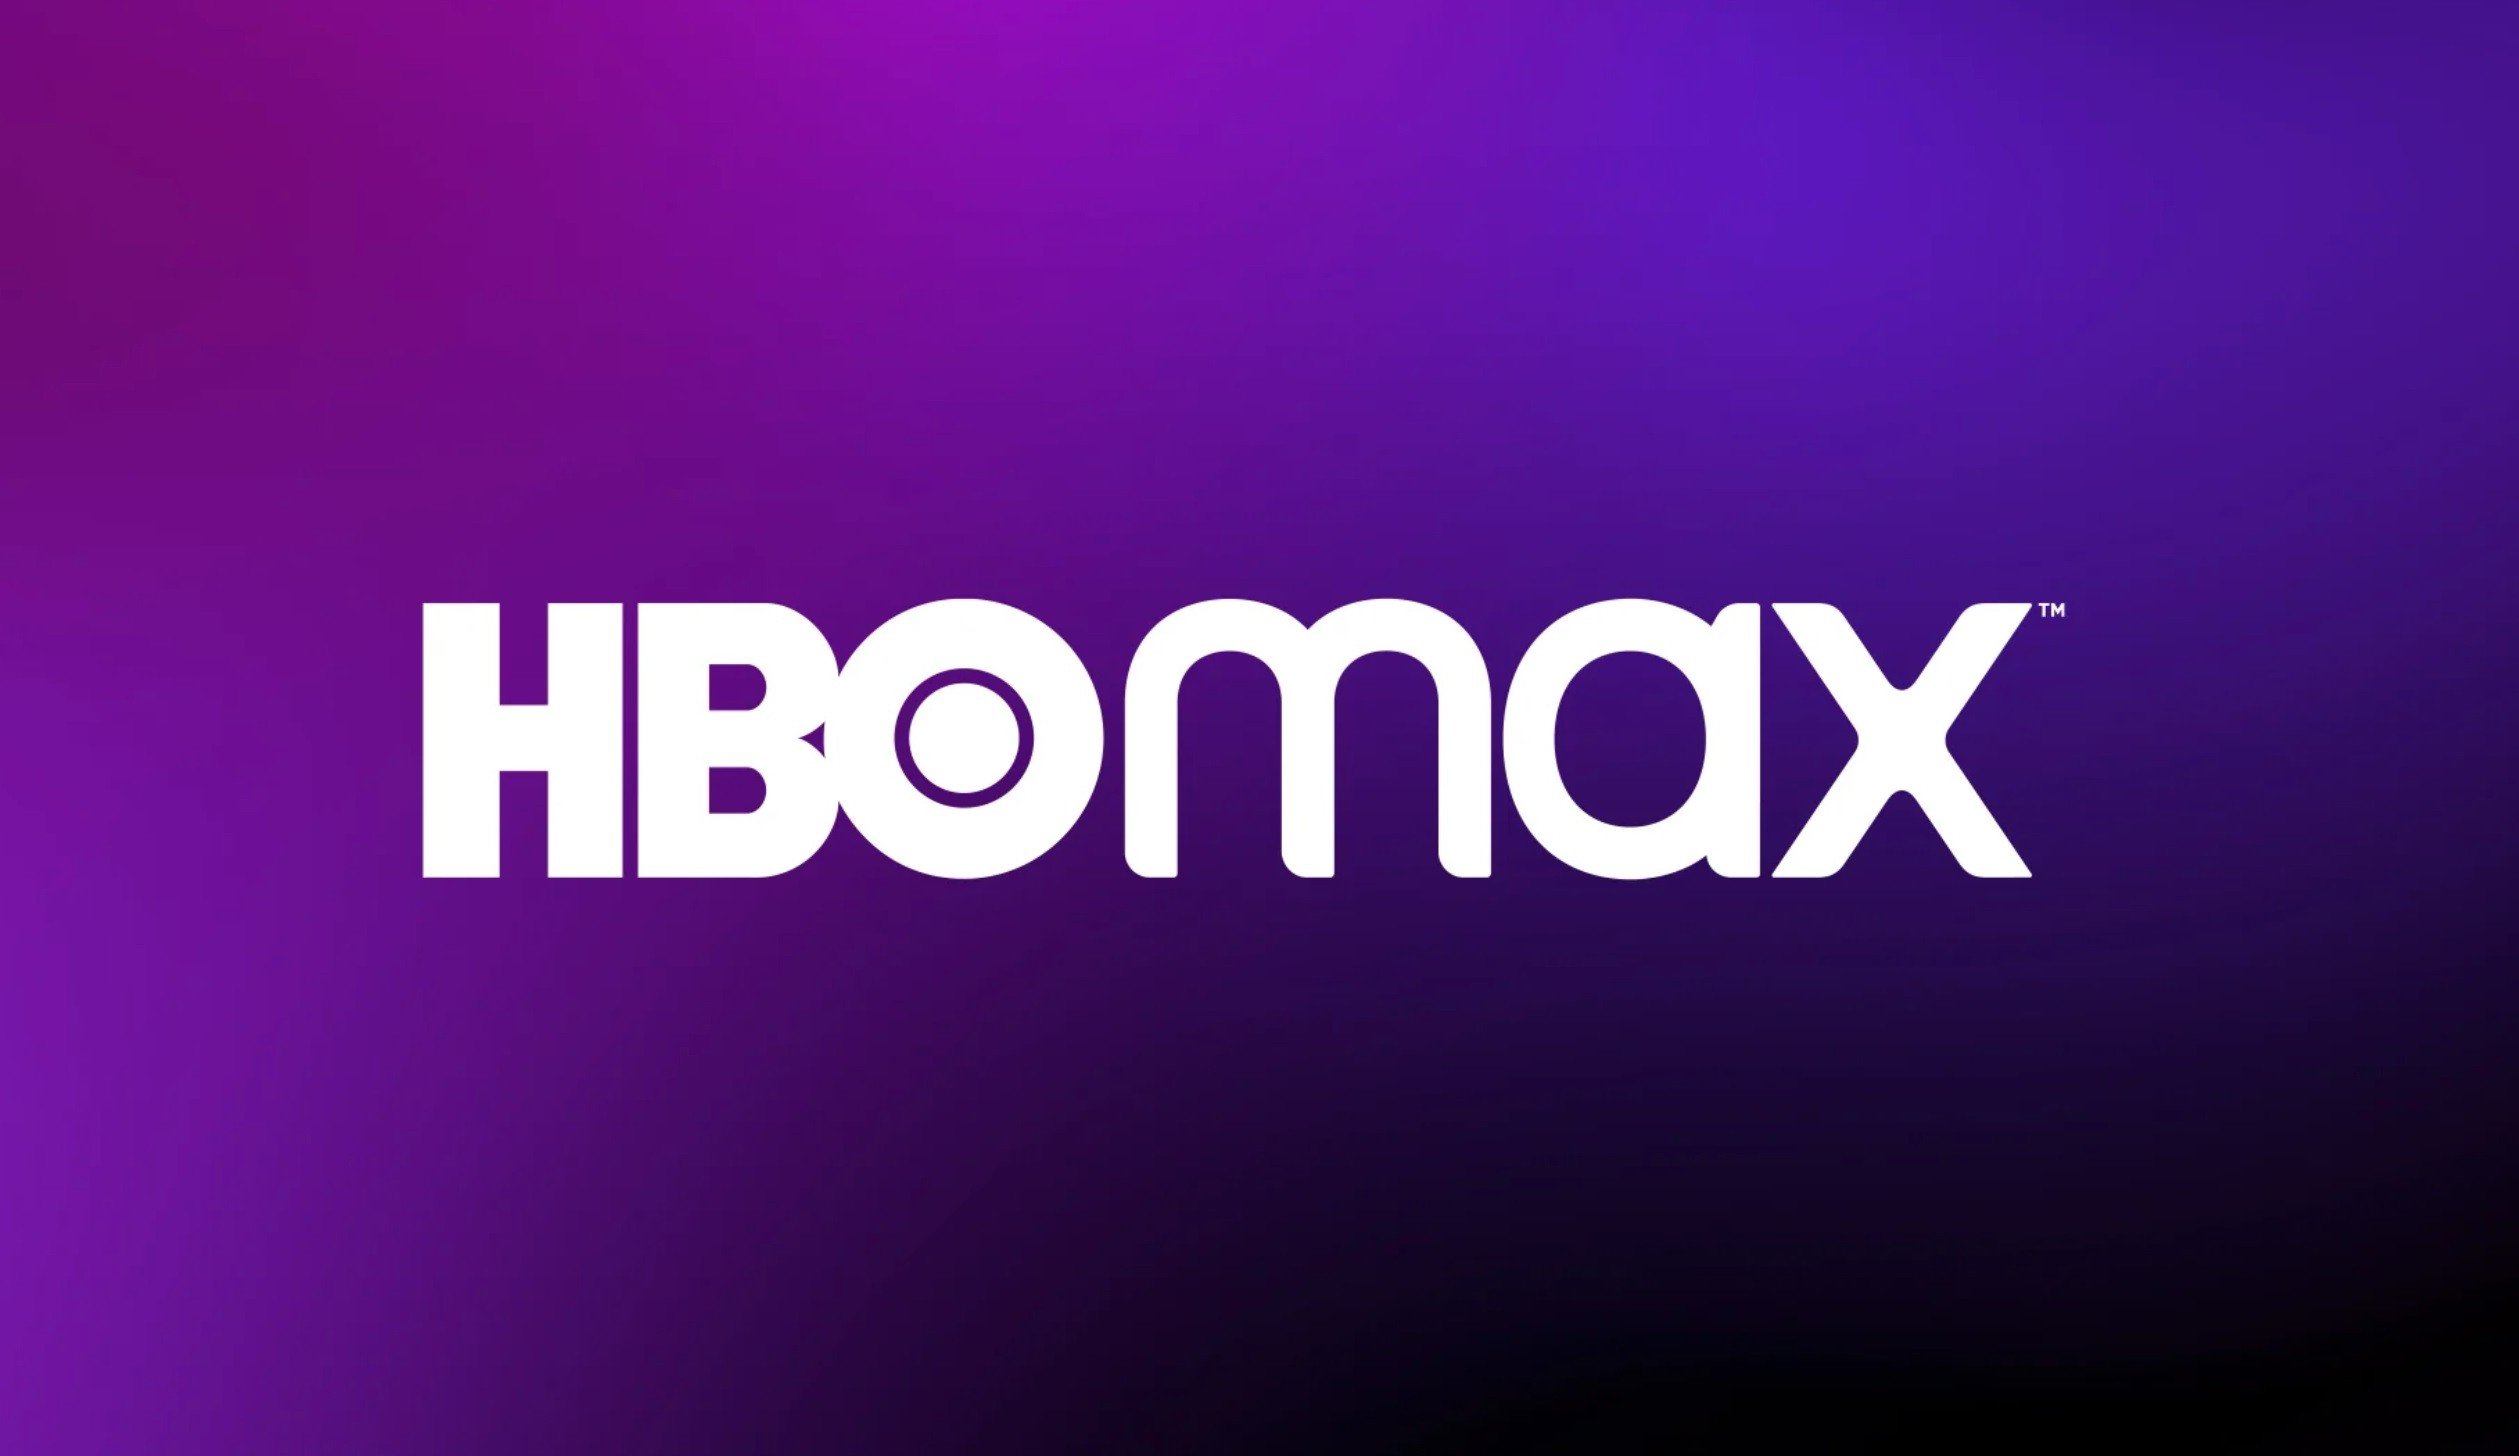 Descubra as estreias da HBO Max em setembro  Diário do Grande ABC -  Notícias e informações